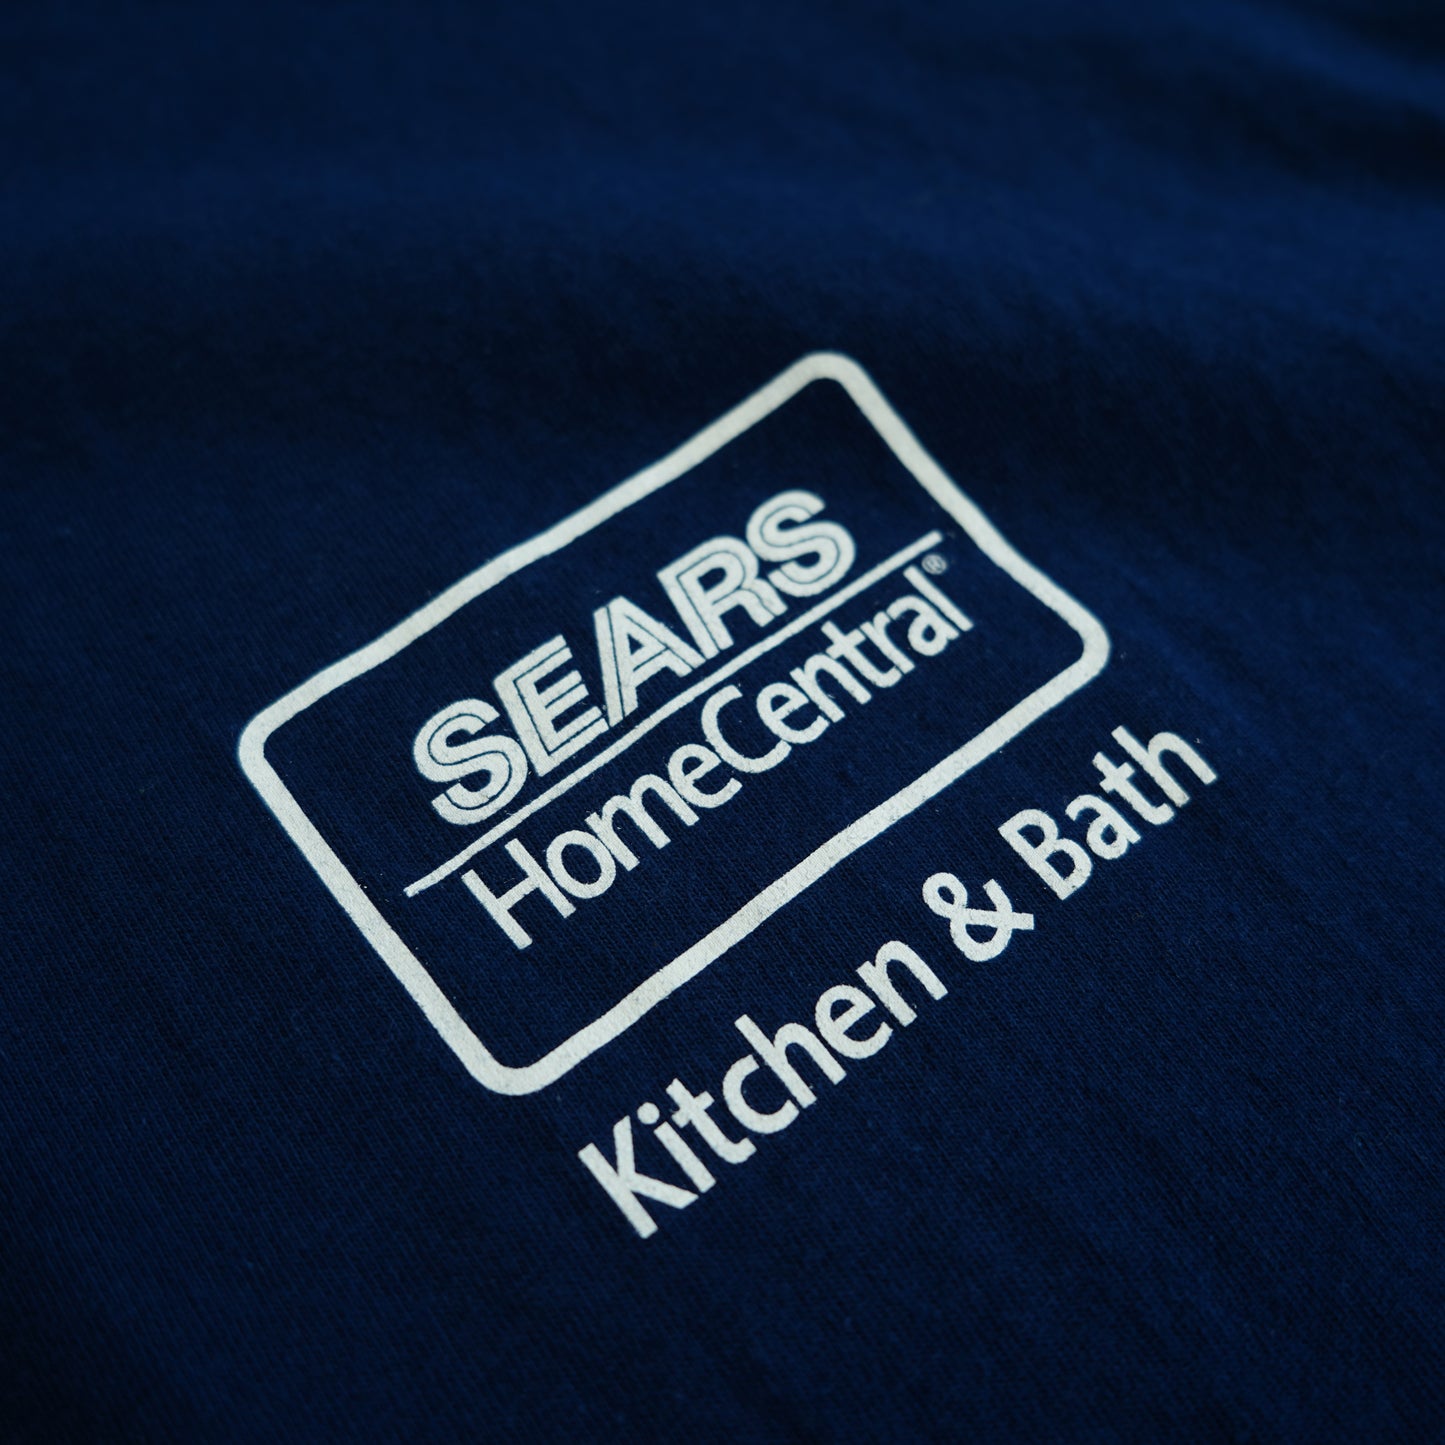 SEARS Kitchen & Bath Staff Tee